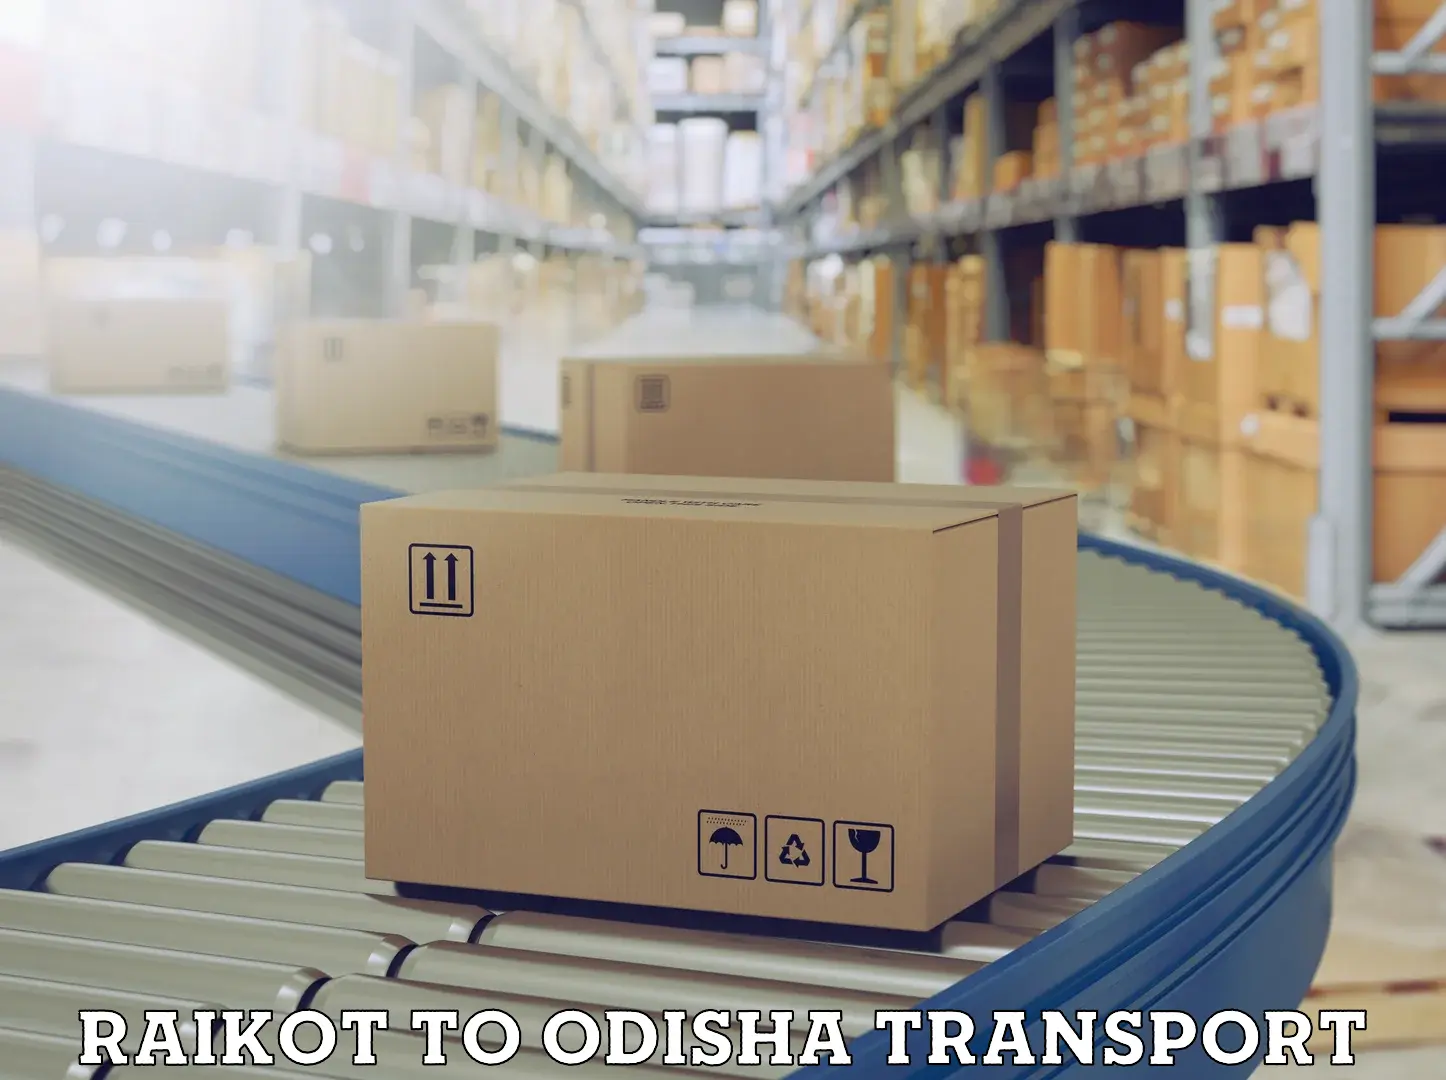 Daily transport service Raikot to Odisha